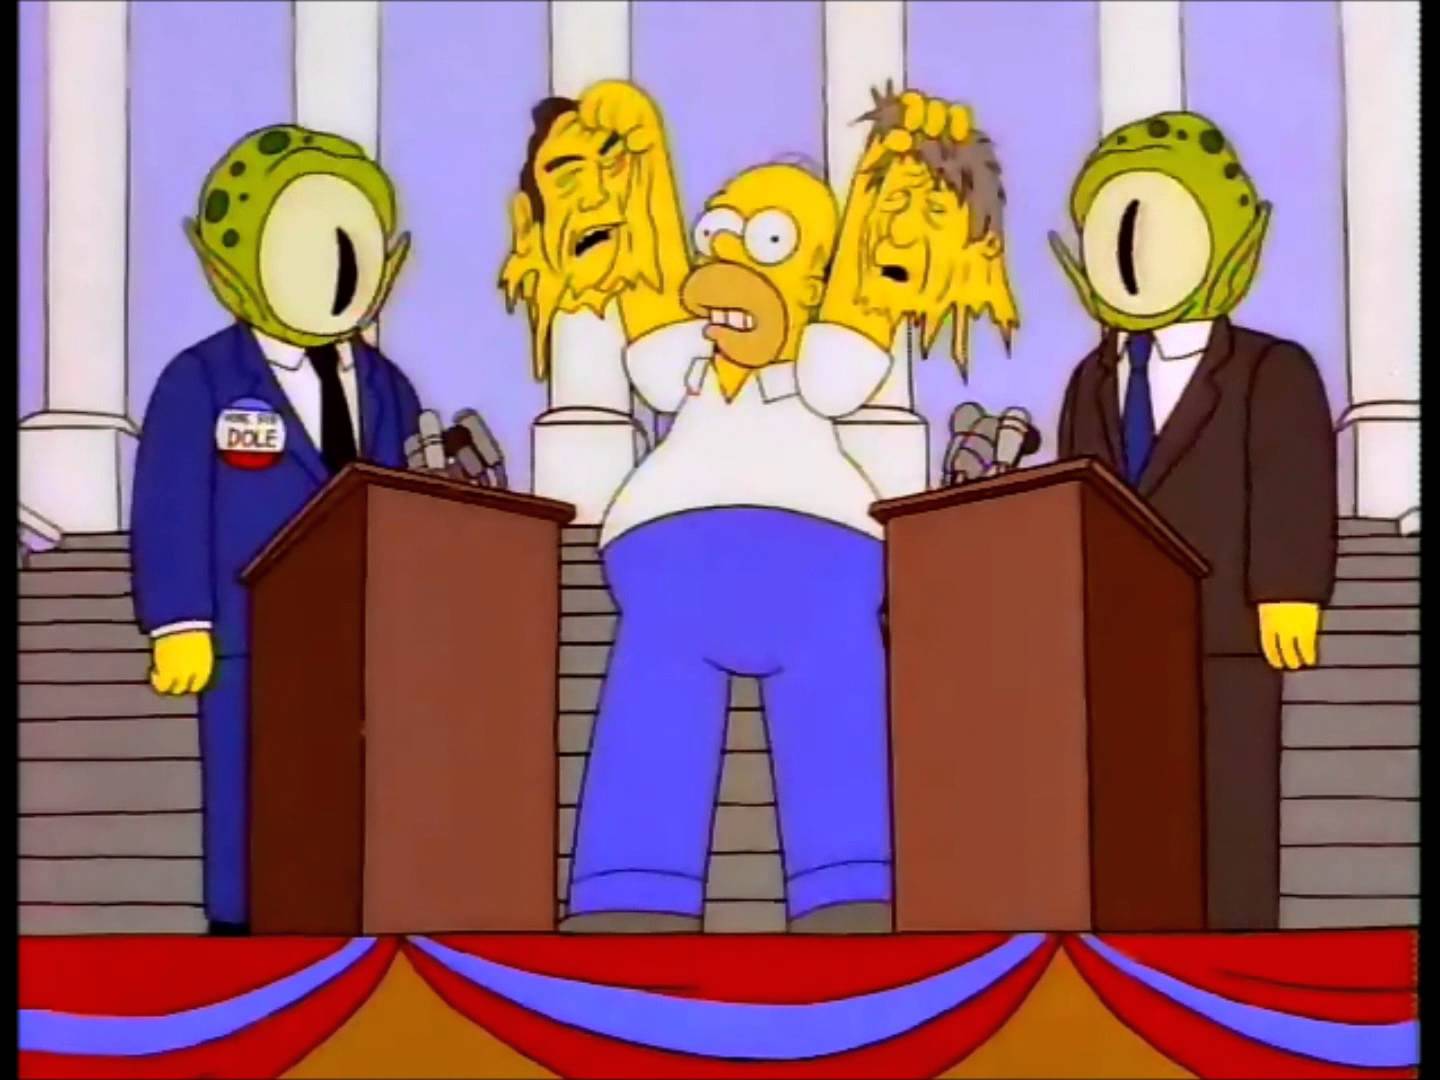 simpsons-election-debate-aliens-kang-hom